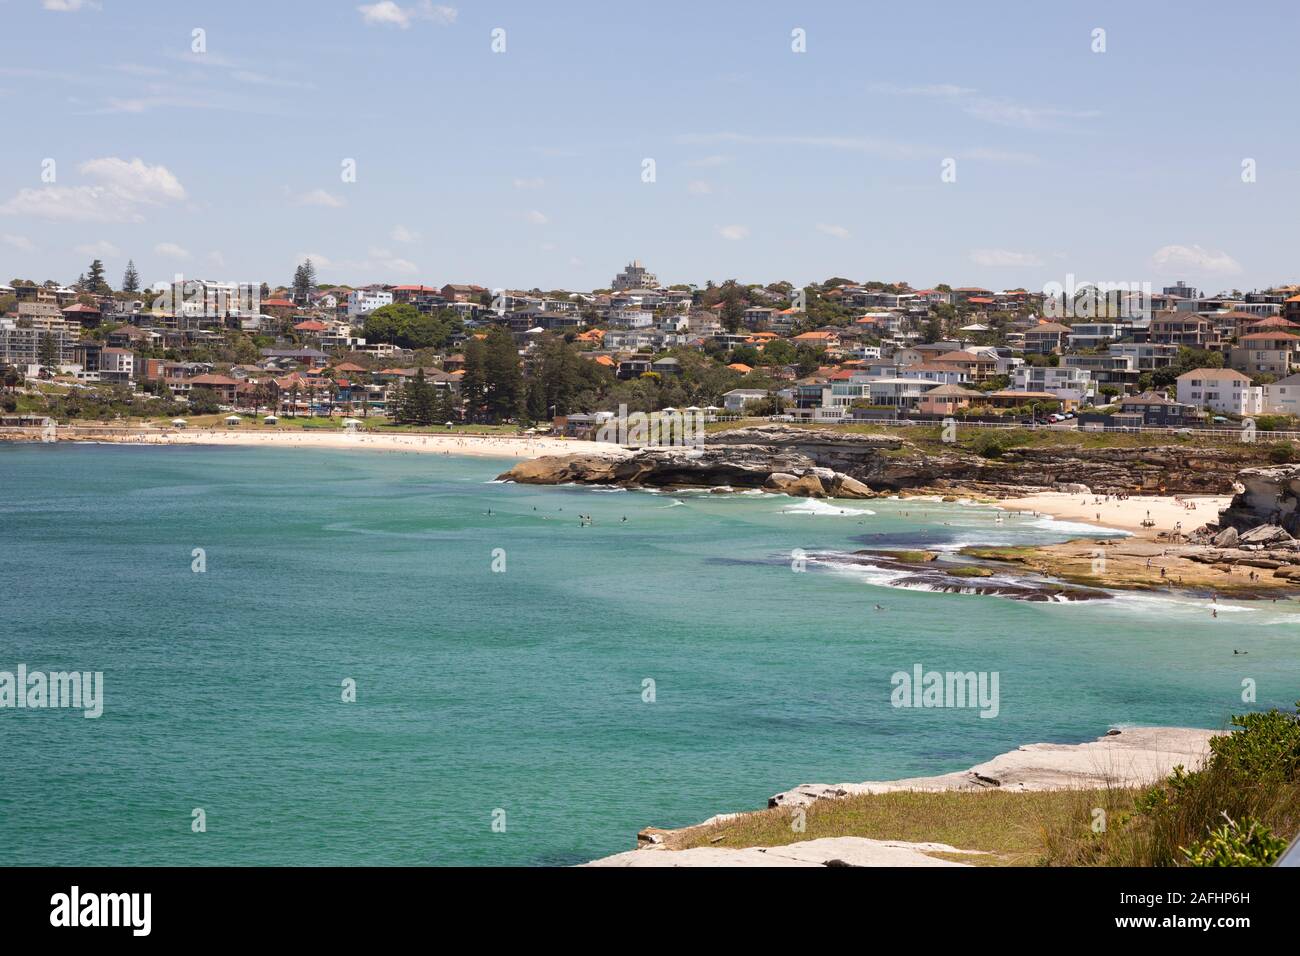 Da Sydney Bondi a Bronte Ocean Walk; vista panoramica delle spiagge di Tamarama e Bronte, Sydney New South Wales Australia Foto Stock